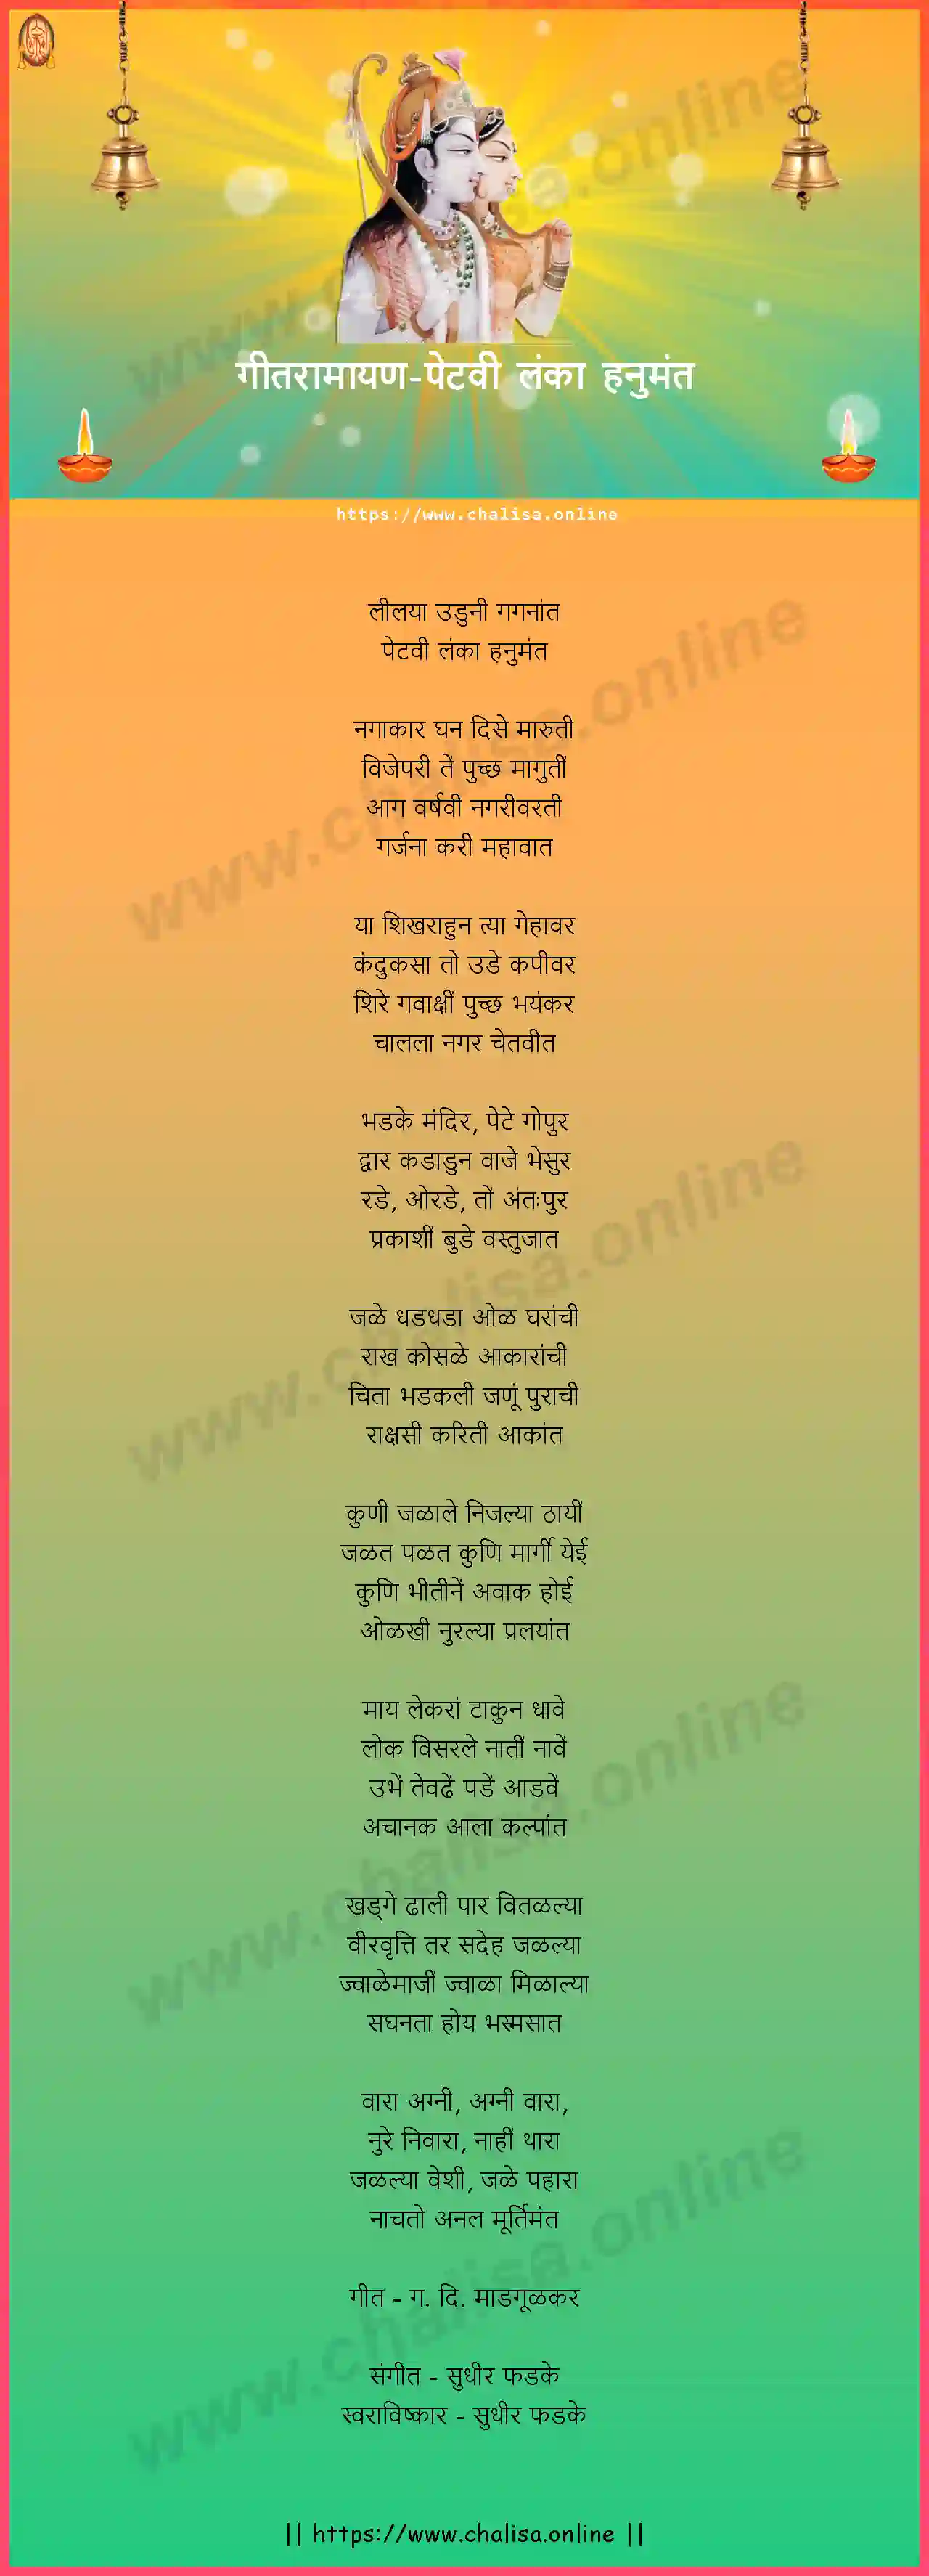 petavi-lanka-hanumant-geet-ramayan-marathi-lyrics-download